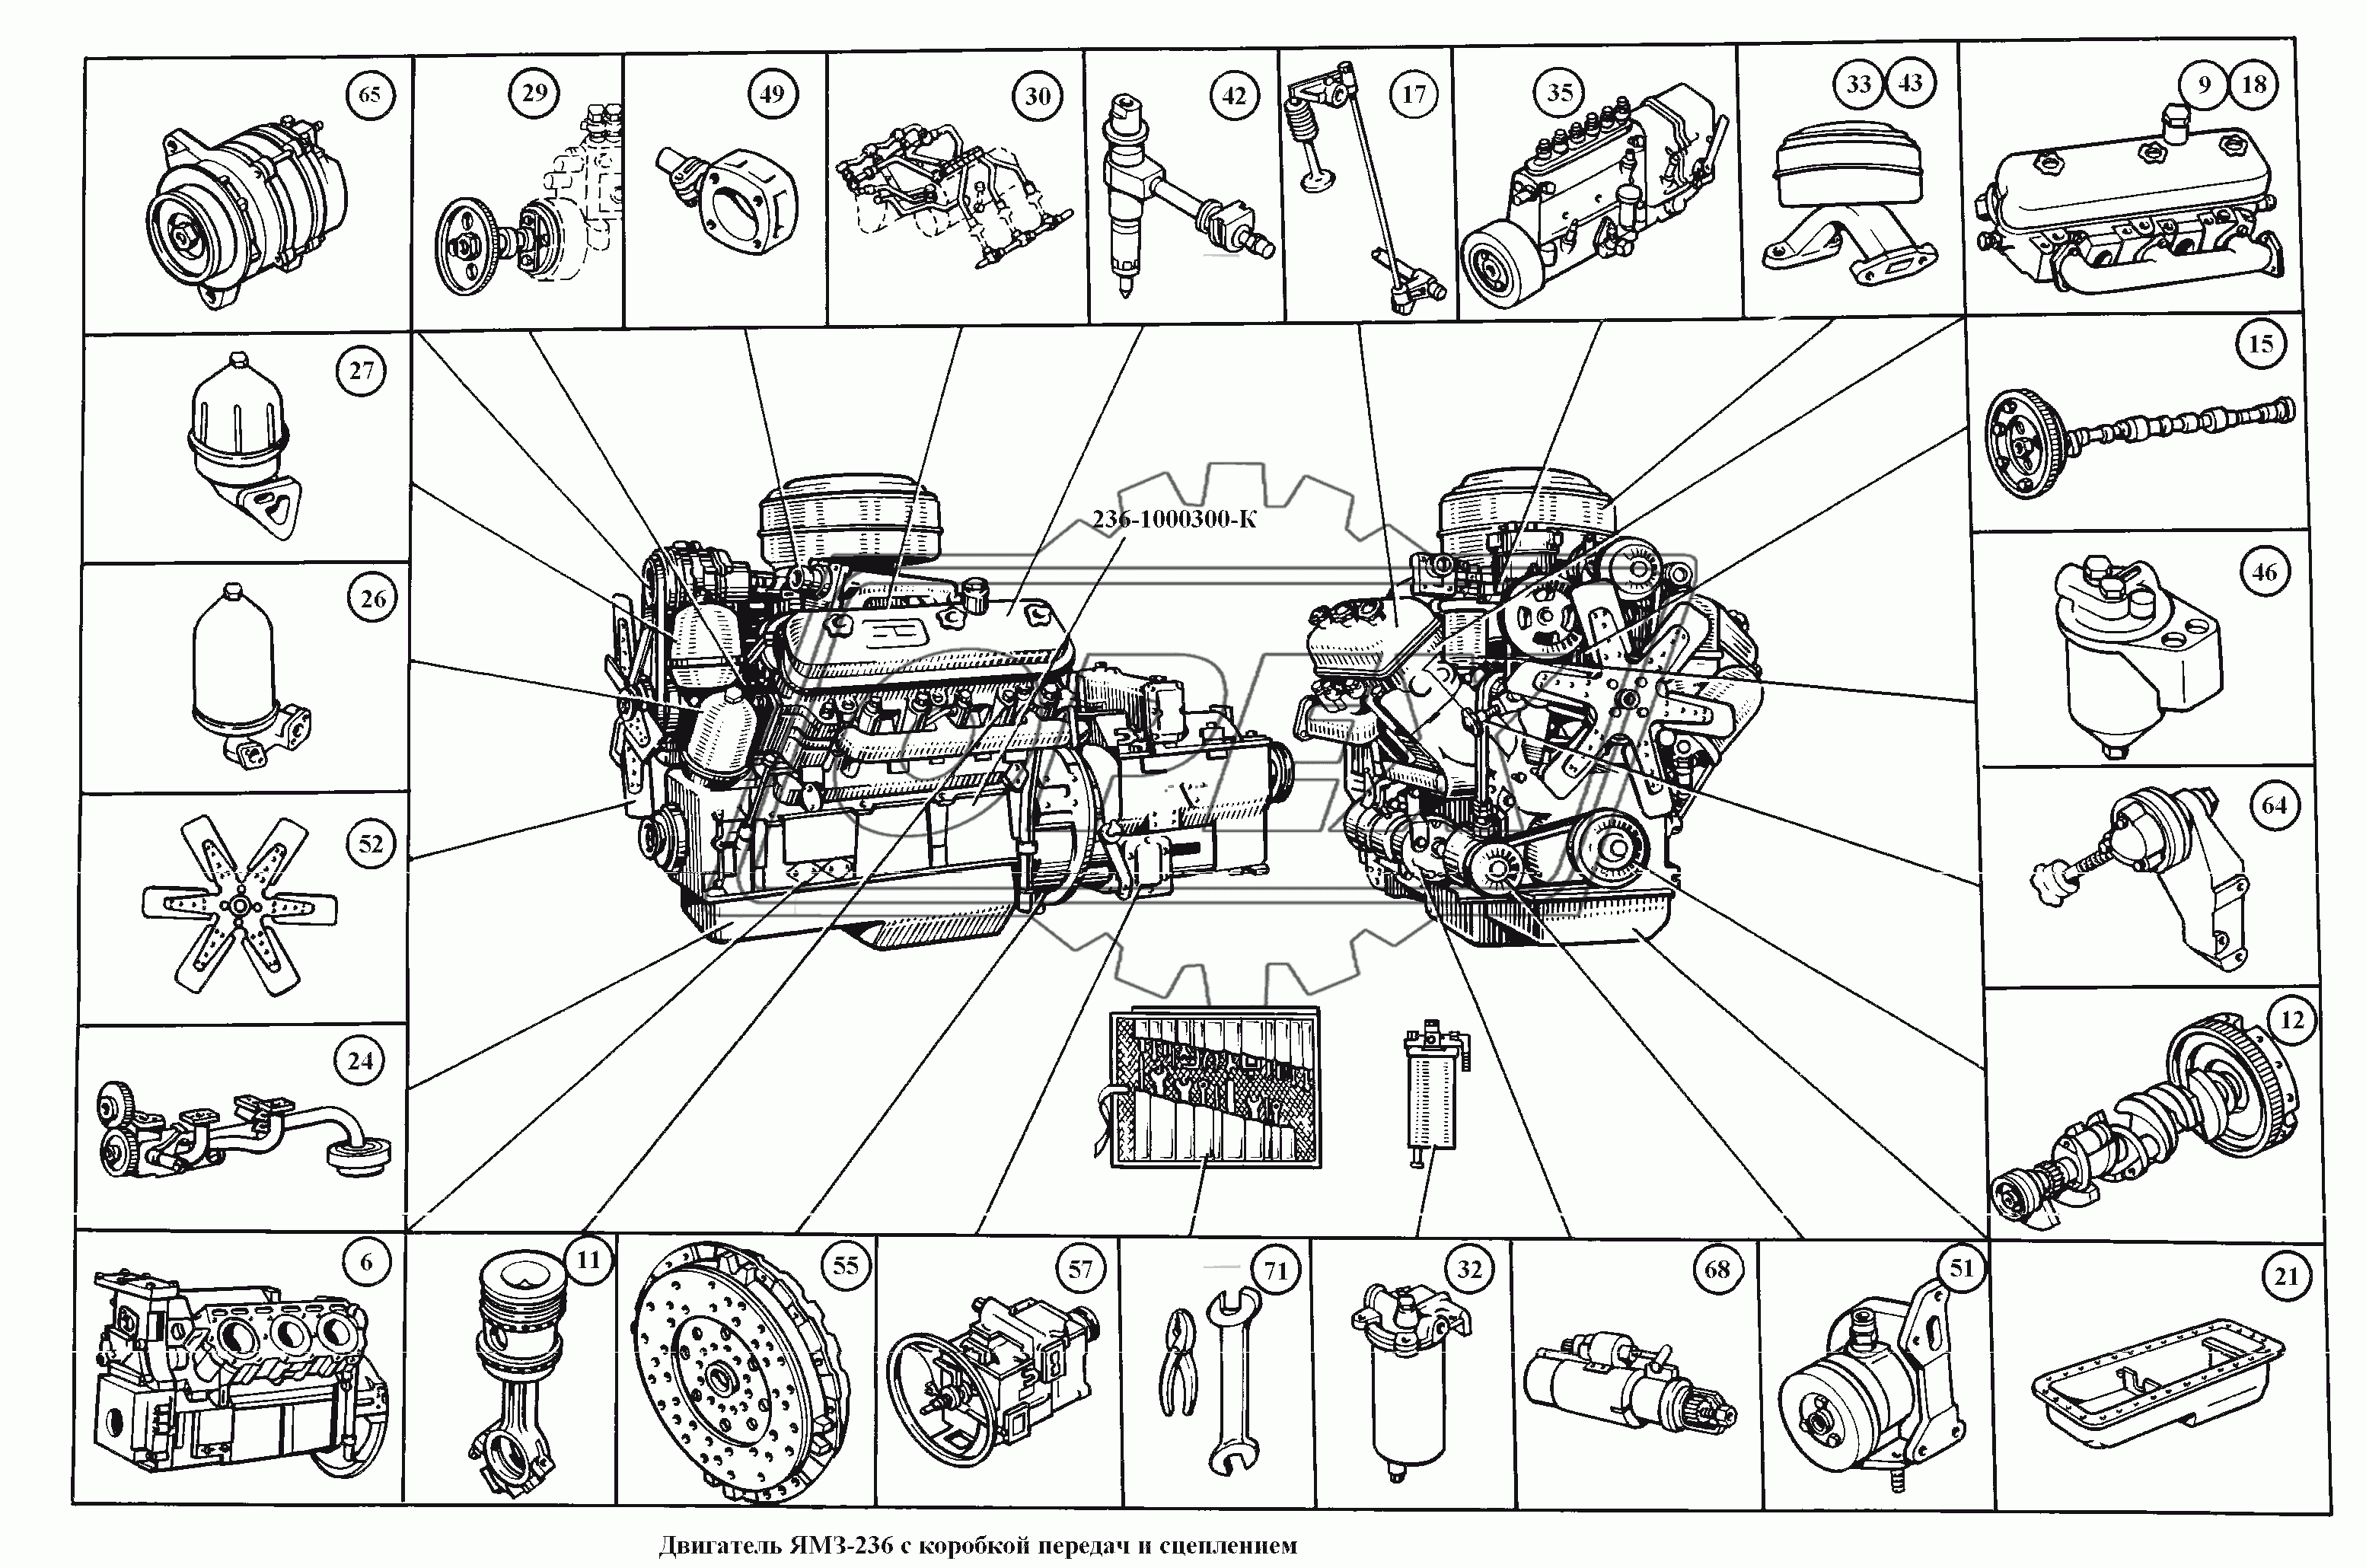 Двигатель ЯМЗ-236 с коробкой передач и сцеплением